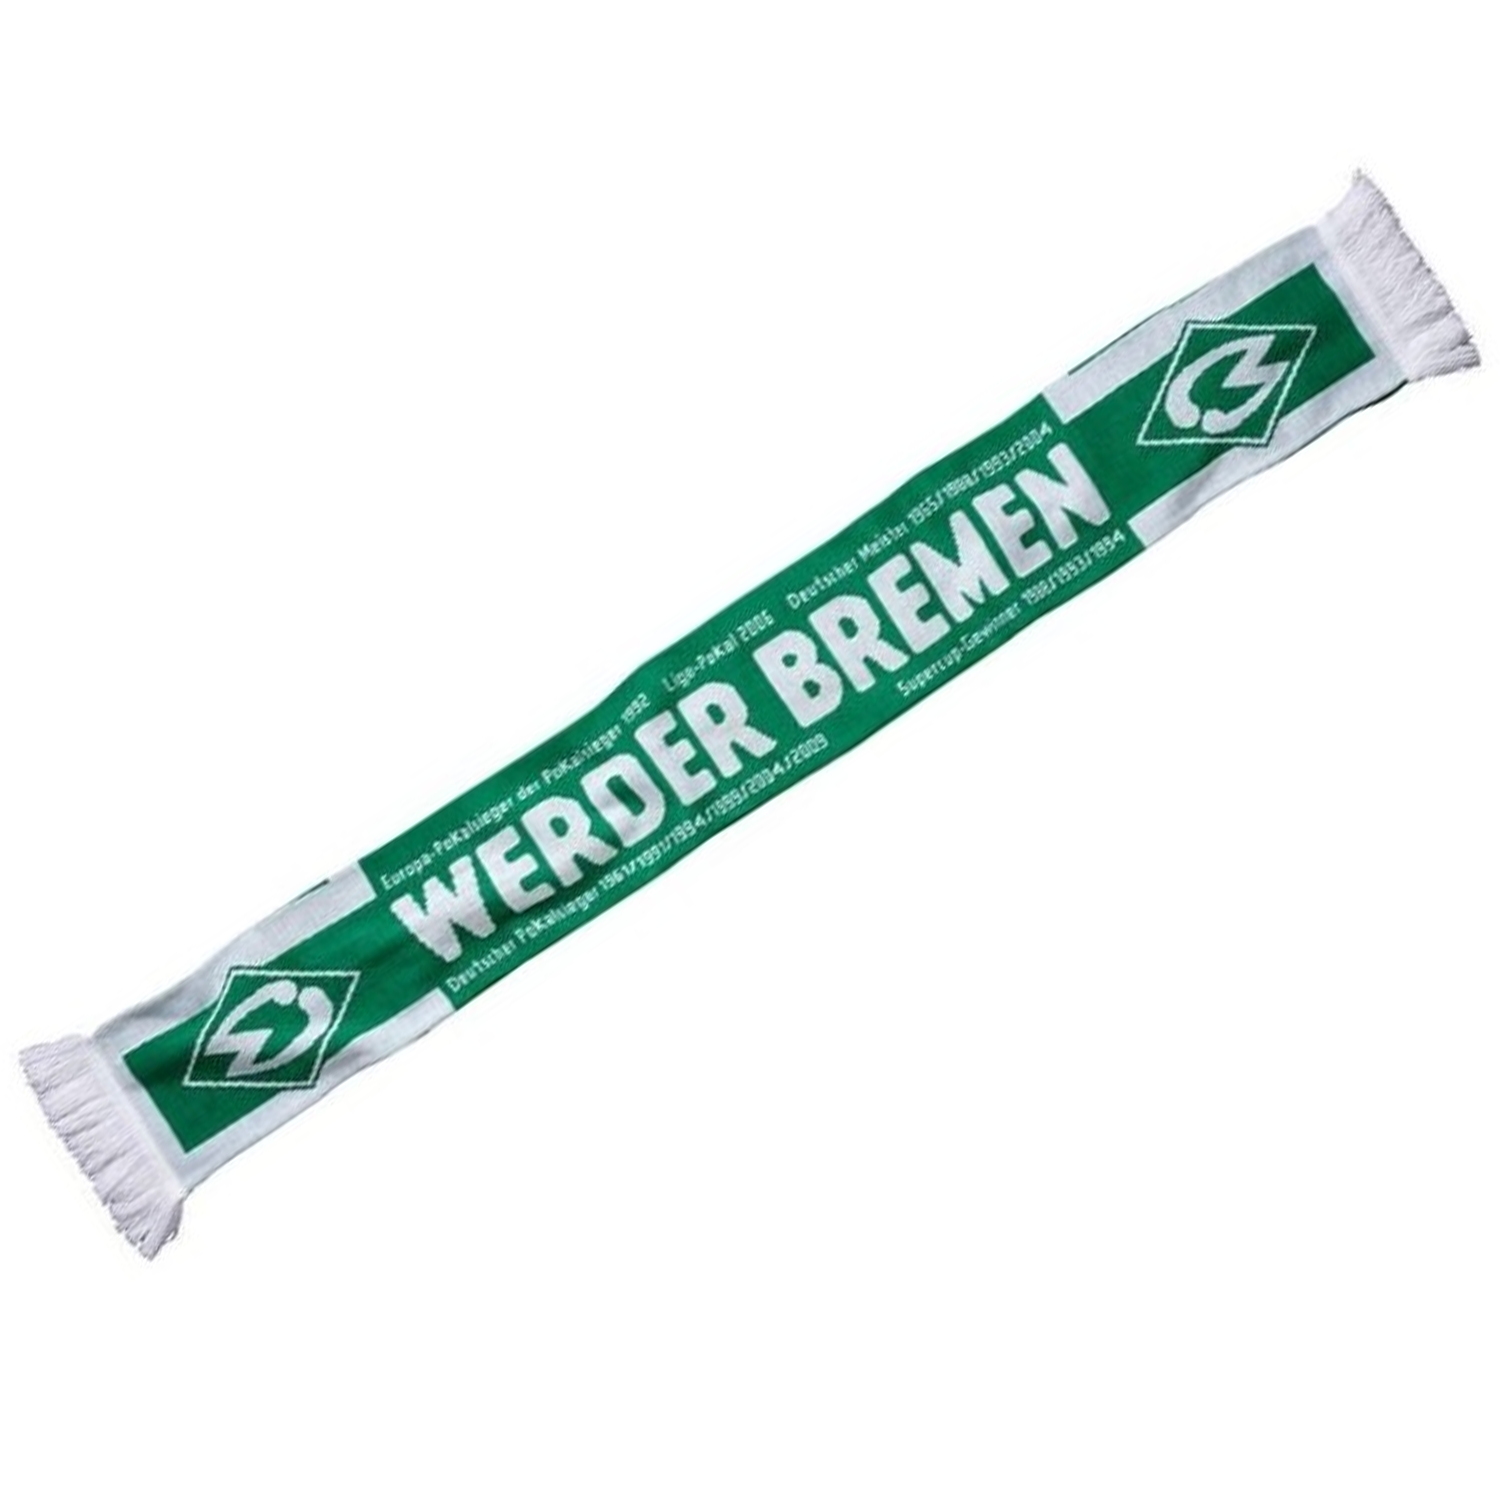 SV Werder Bremen Schal 'Erfolge' - grün